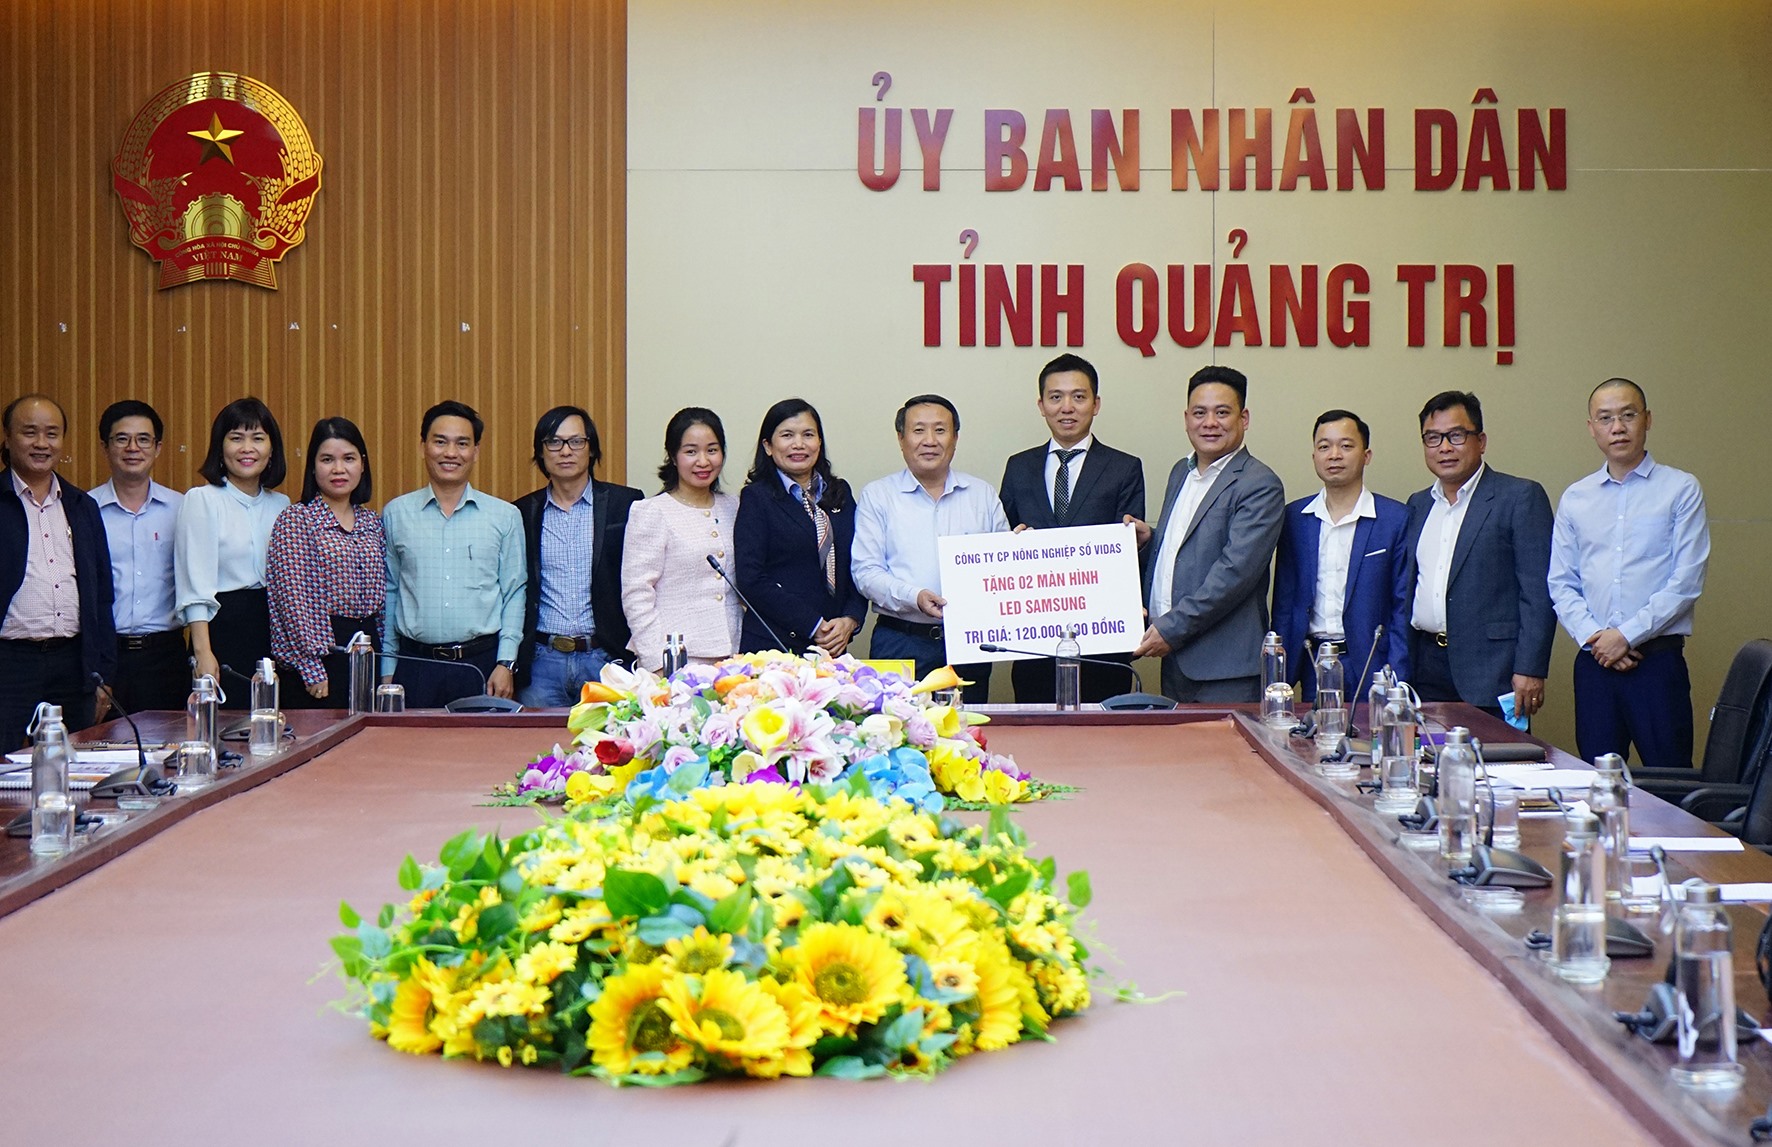 Phó Chủ tịch Thường trực UBND tỉnh Hà Sỹ Đồng tiếp nhận 2 màn hình led do Công ty Cổ phần Nông nghiệp số VIDAS trao tặng - Ảnh: L.A